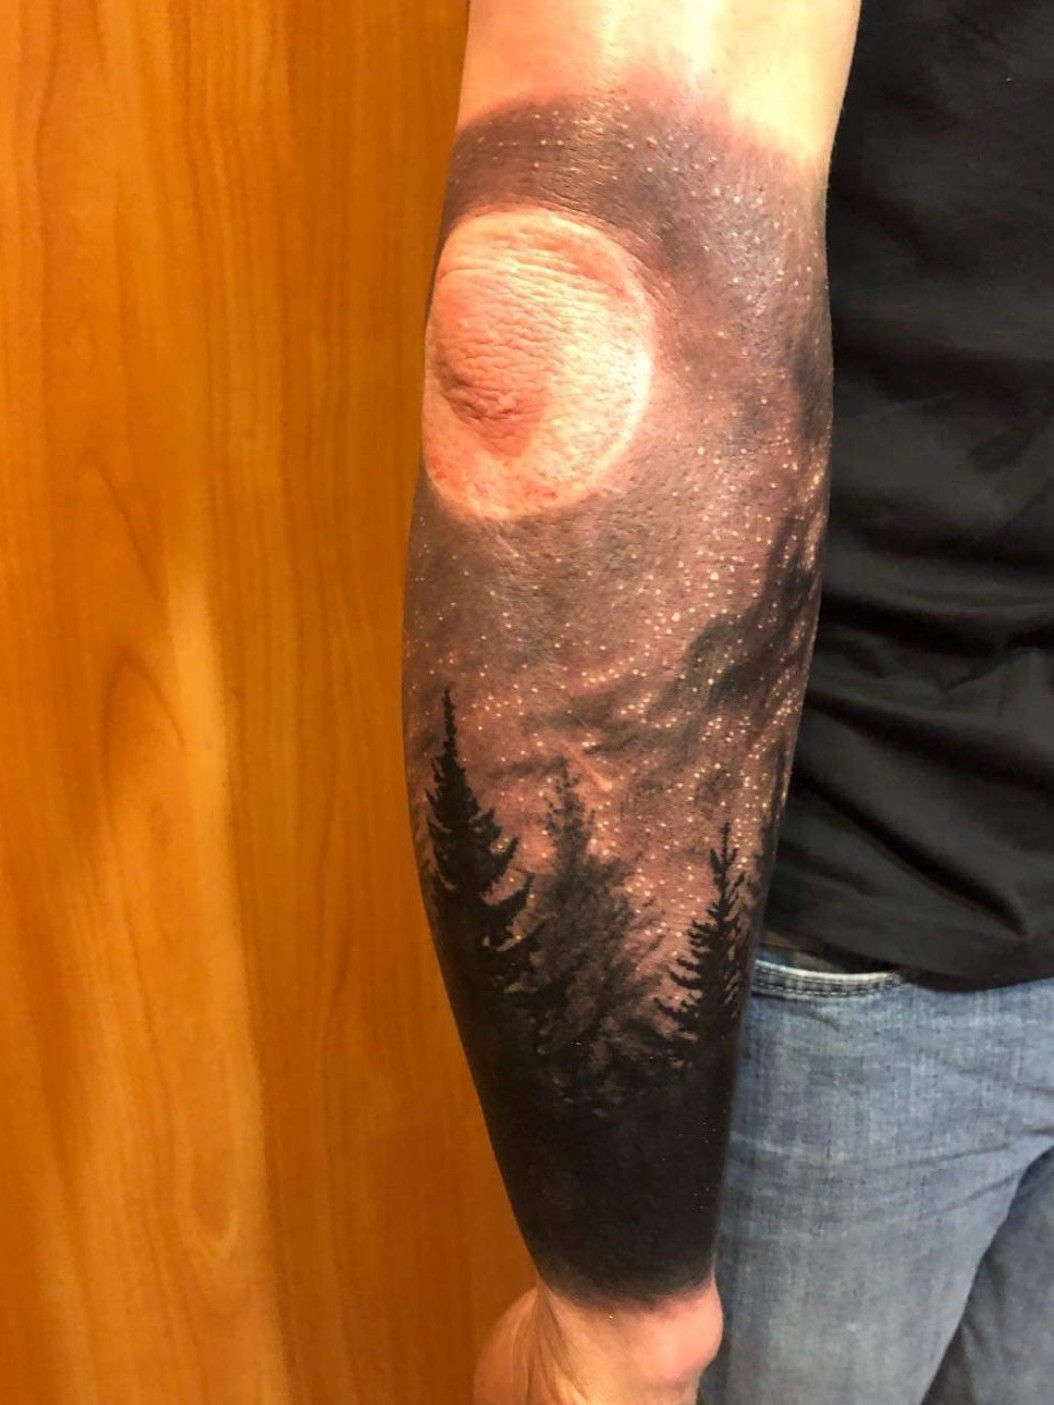 Steve owner and CEO of FBI Tattoo London on Twitter Meteor Shower done  by Niki fbitattoolondon tat ink arttattoo tattoo letsgetinked  tattoomenow meteor asteroid tattooartist colour  httpstco32zkIgaSH7  Twitter